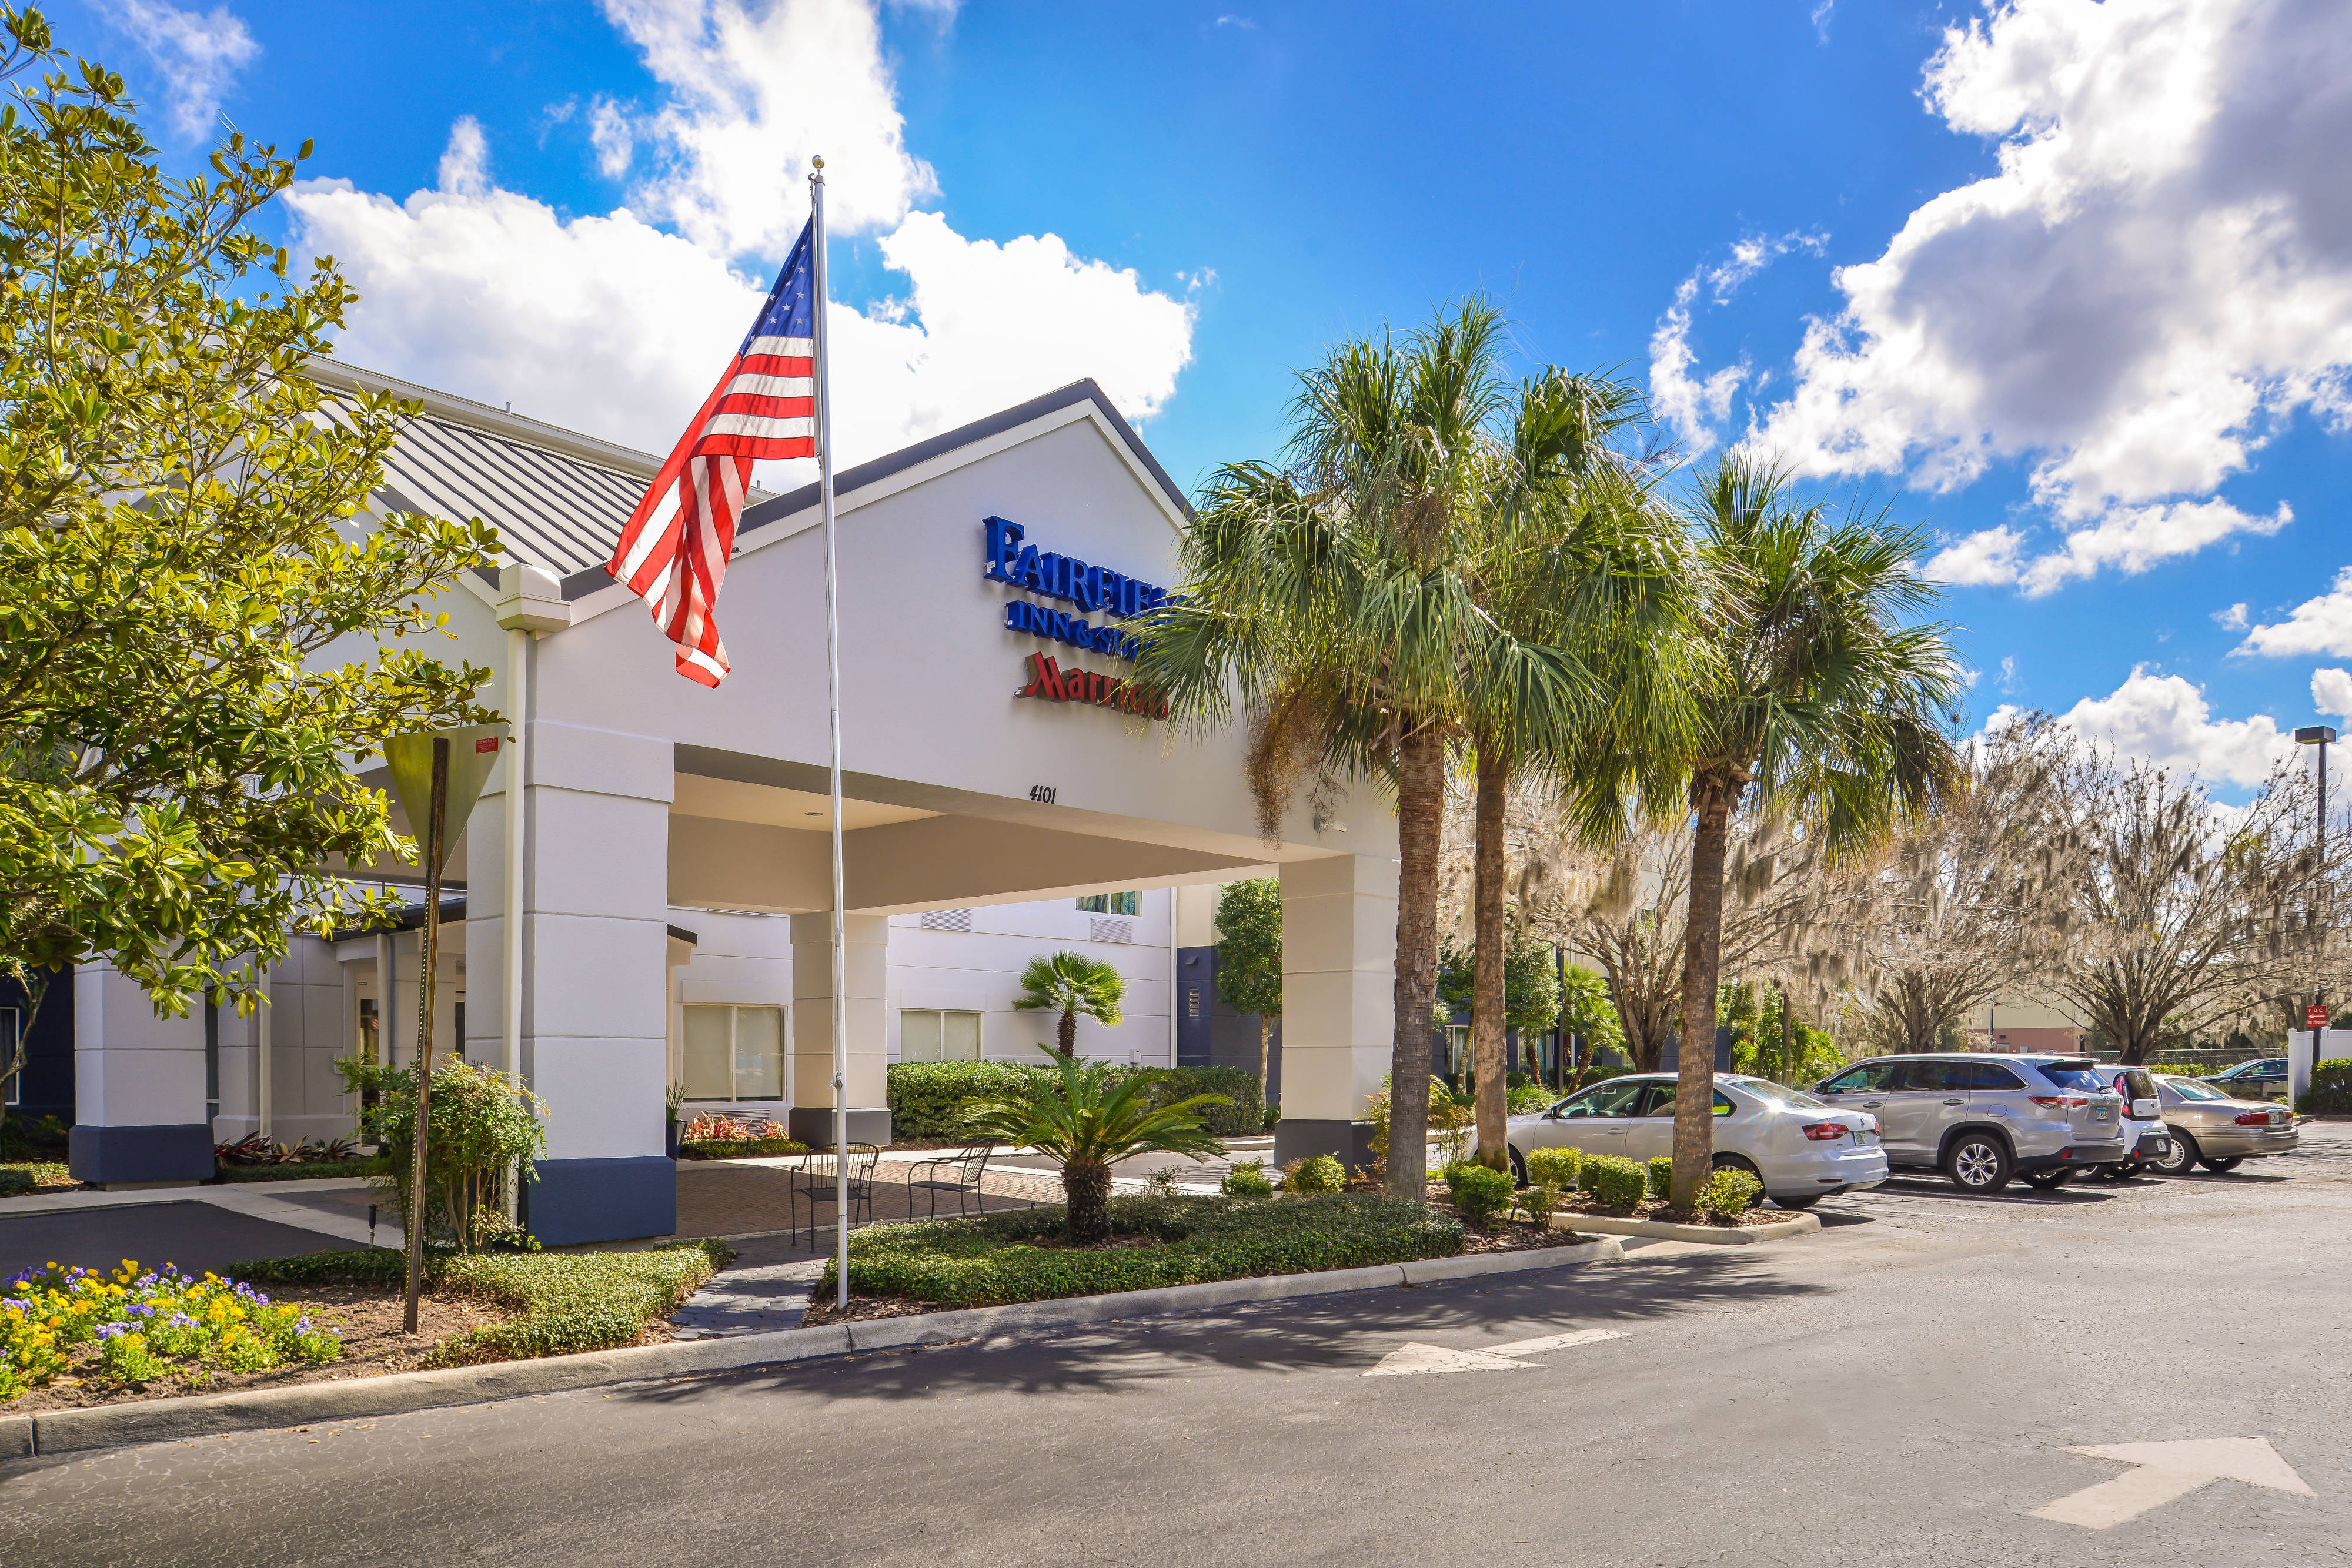 Photo of Fairfield Inn & Suites by Marriott Ocala, Ocala, FL